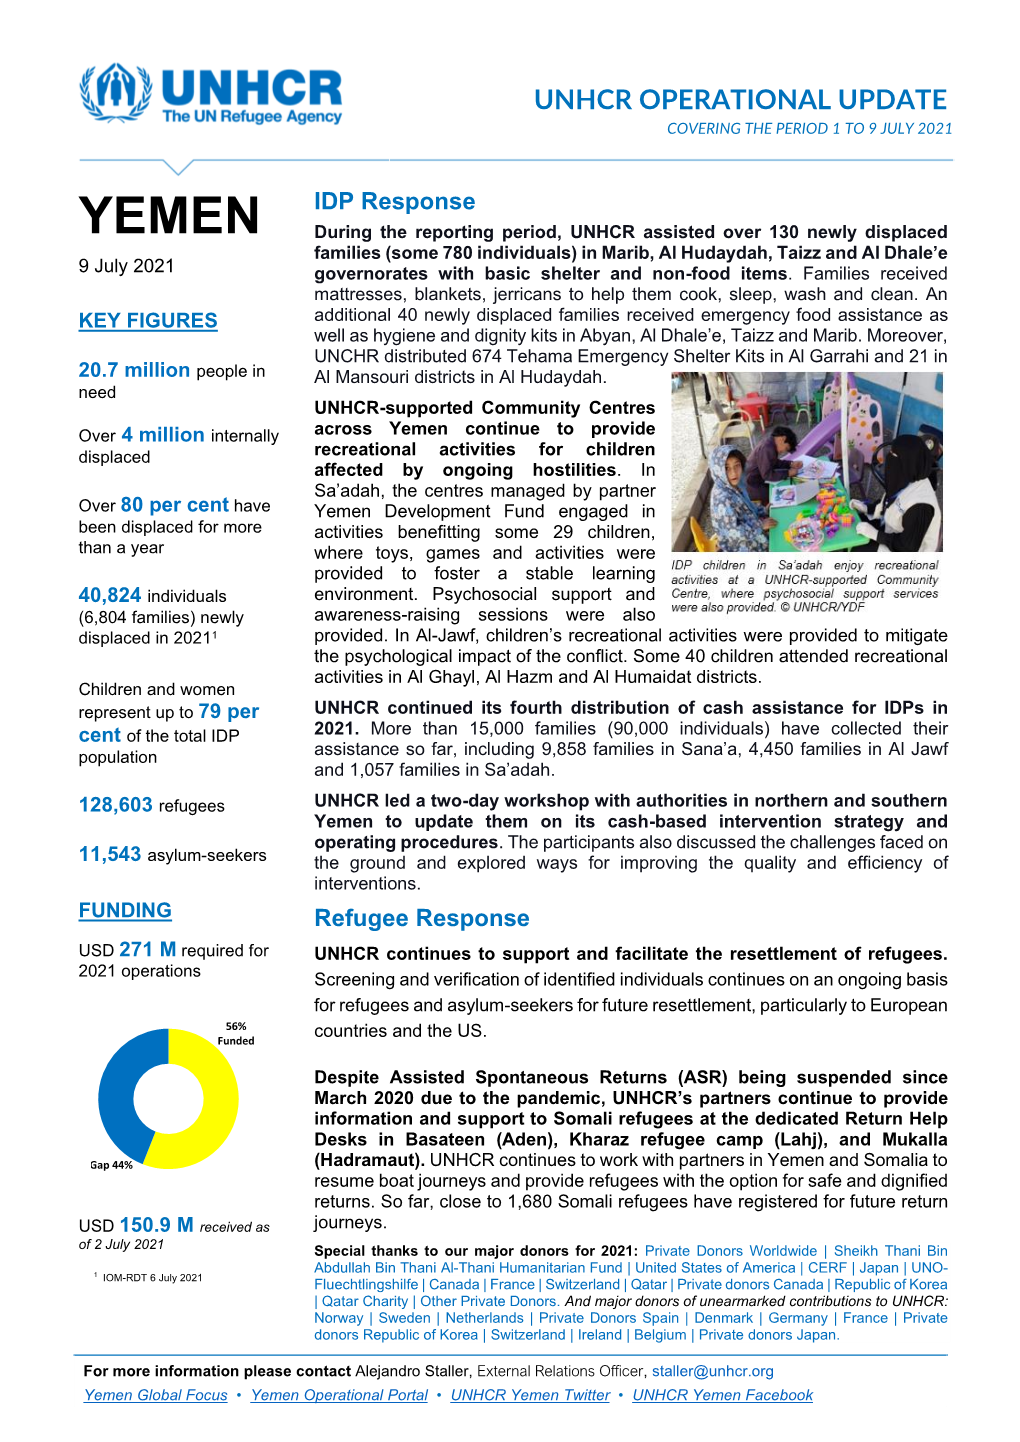 UNHCR Yemen Operational Update